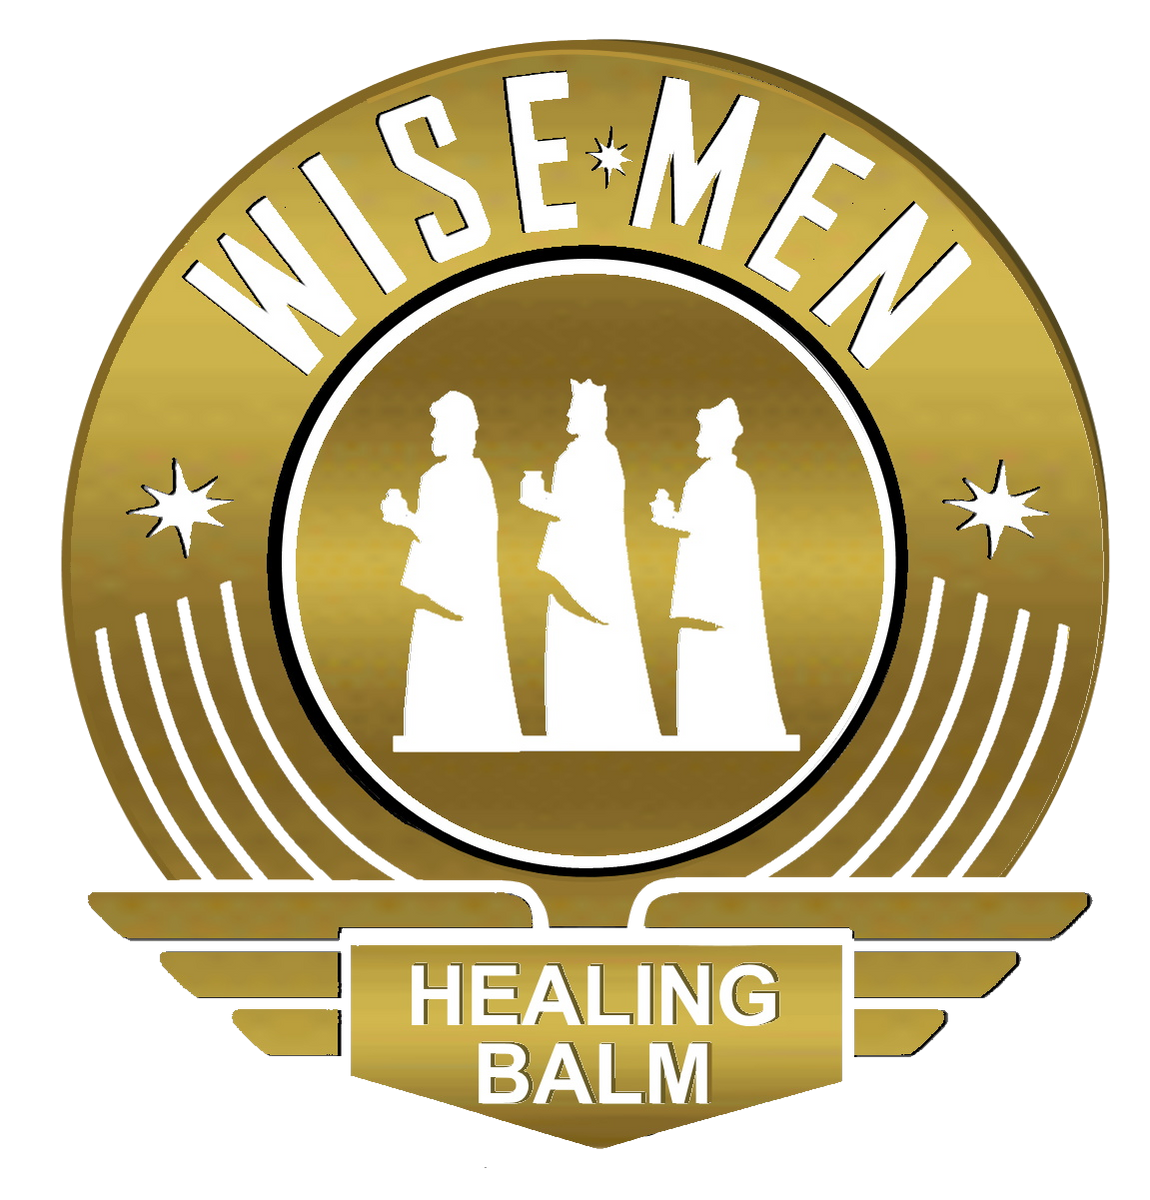 WISE MEN HEALING Balmorganic Healing Salve Owie Ointment Comfrey